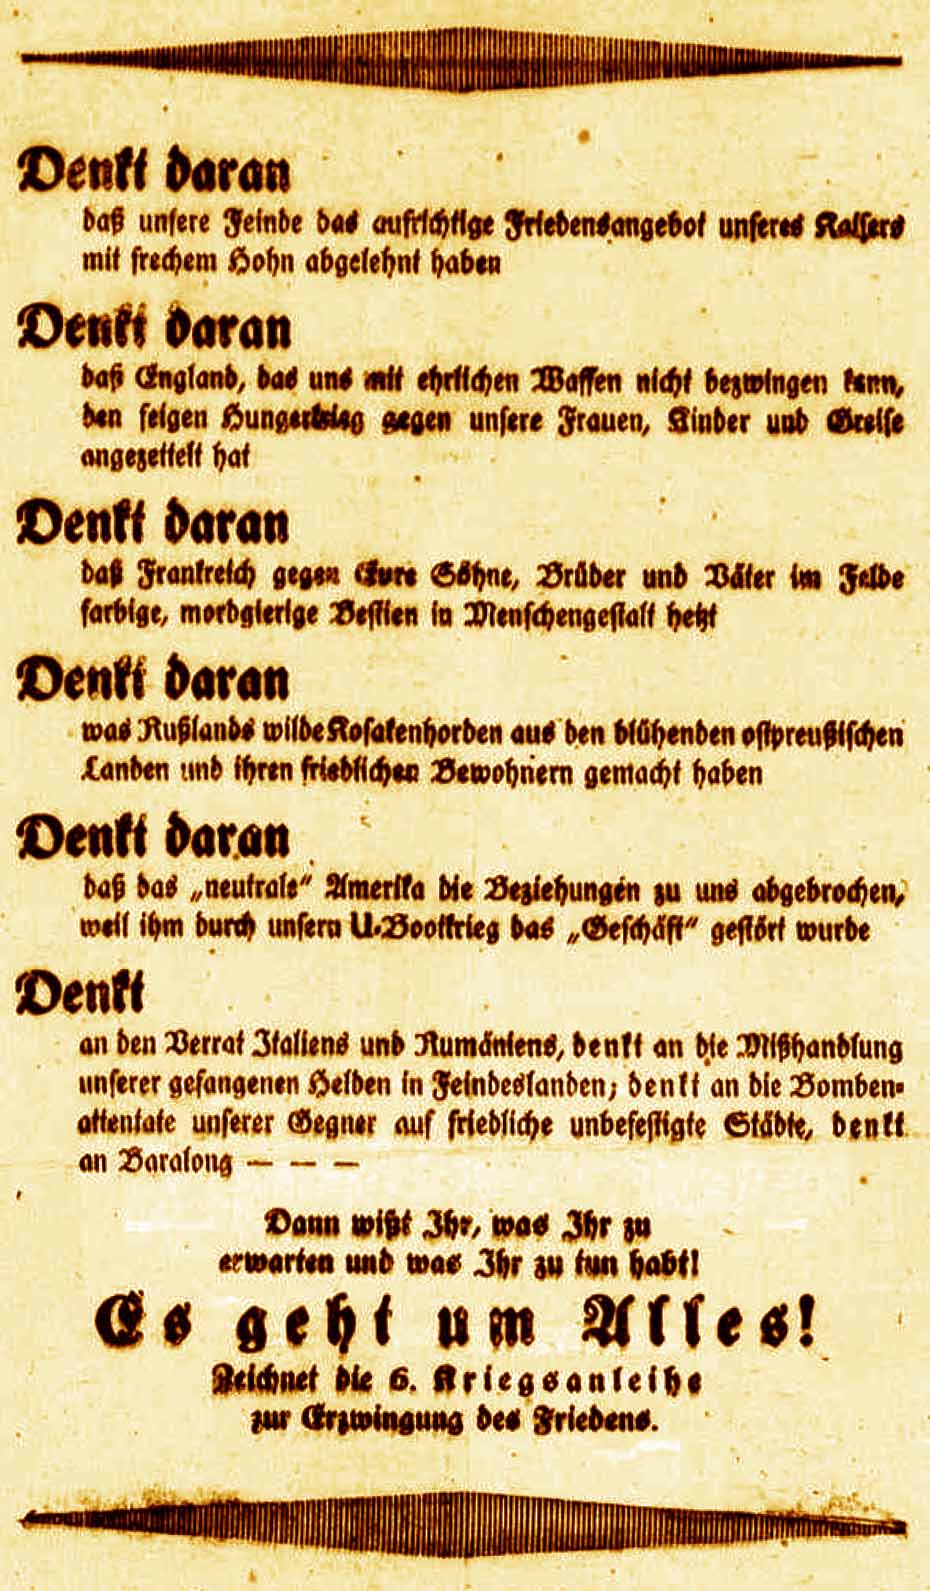 Anzeige in der Deutschen Reichs-Zeitung und in der Bonner Zeitung am 3. April 1917